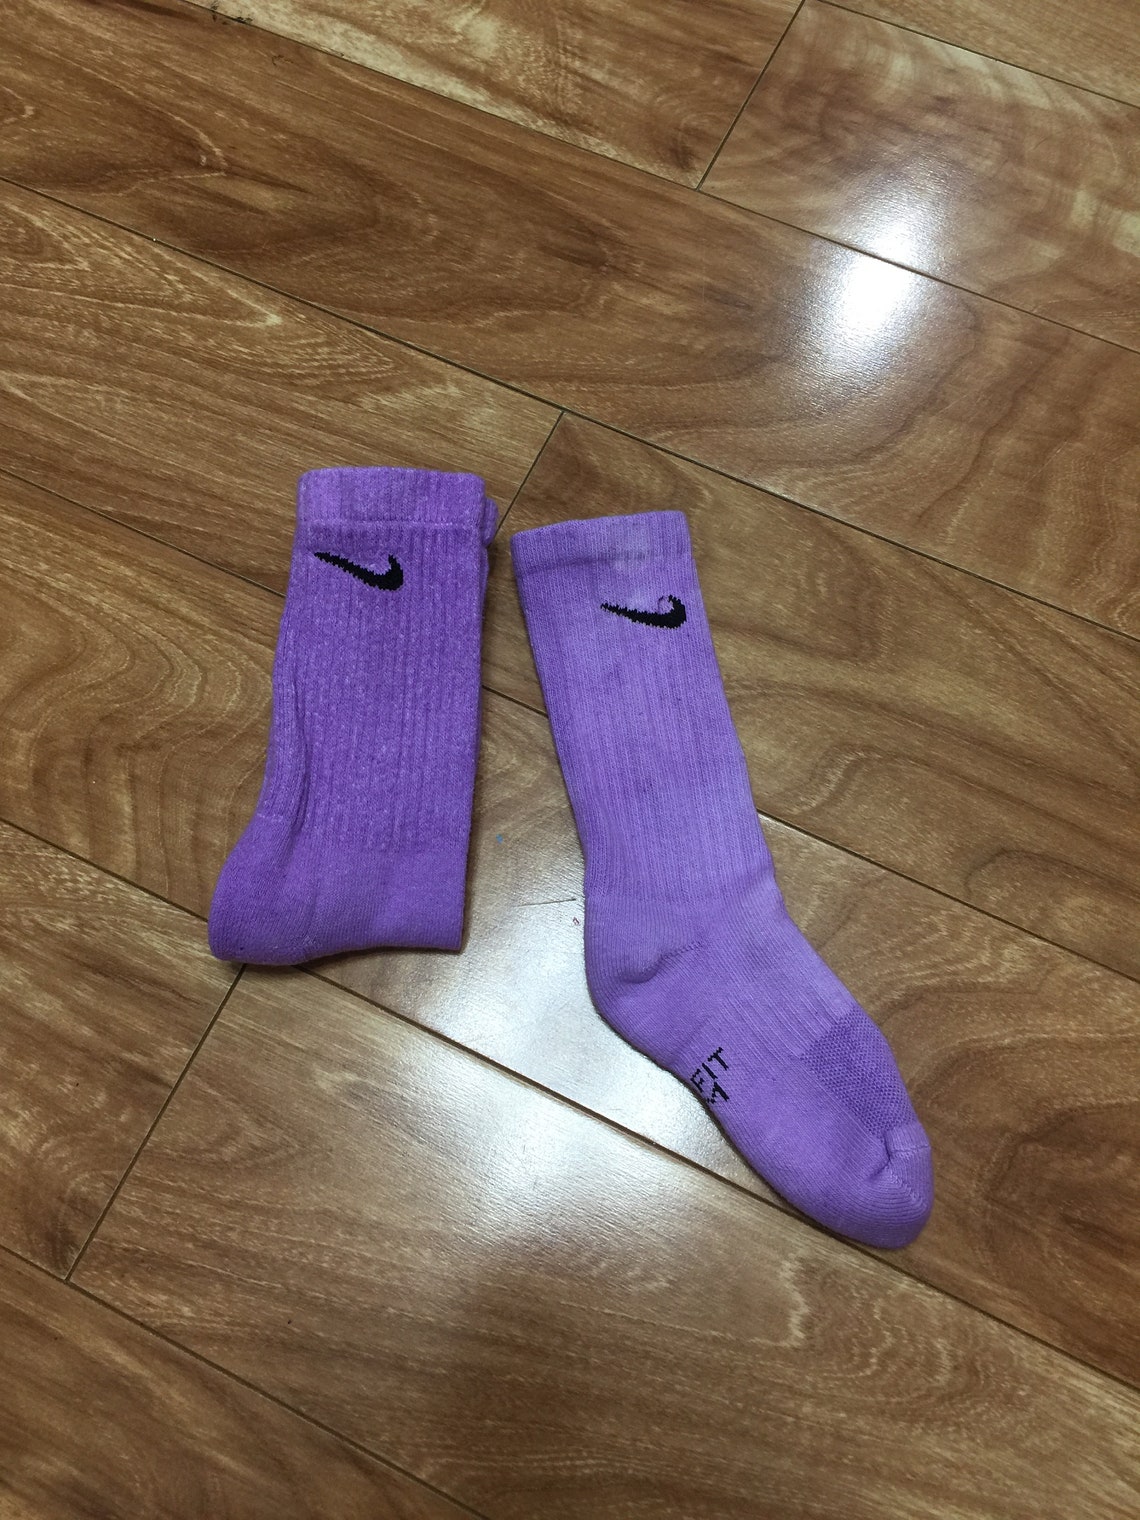 Colored Nike socks custom nike socks tie dyed nike socks | Etsy